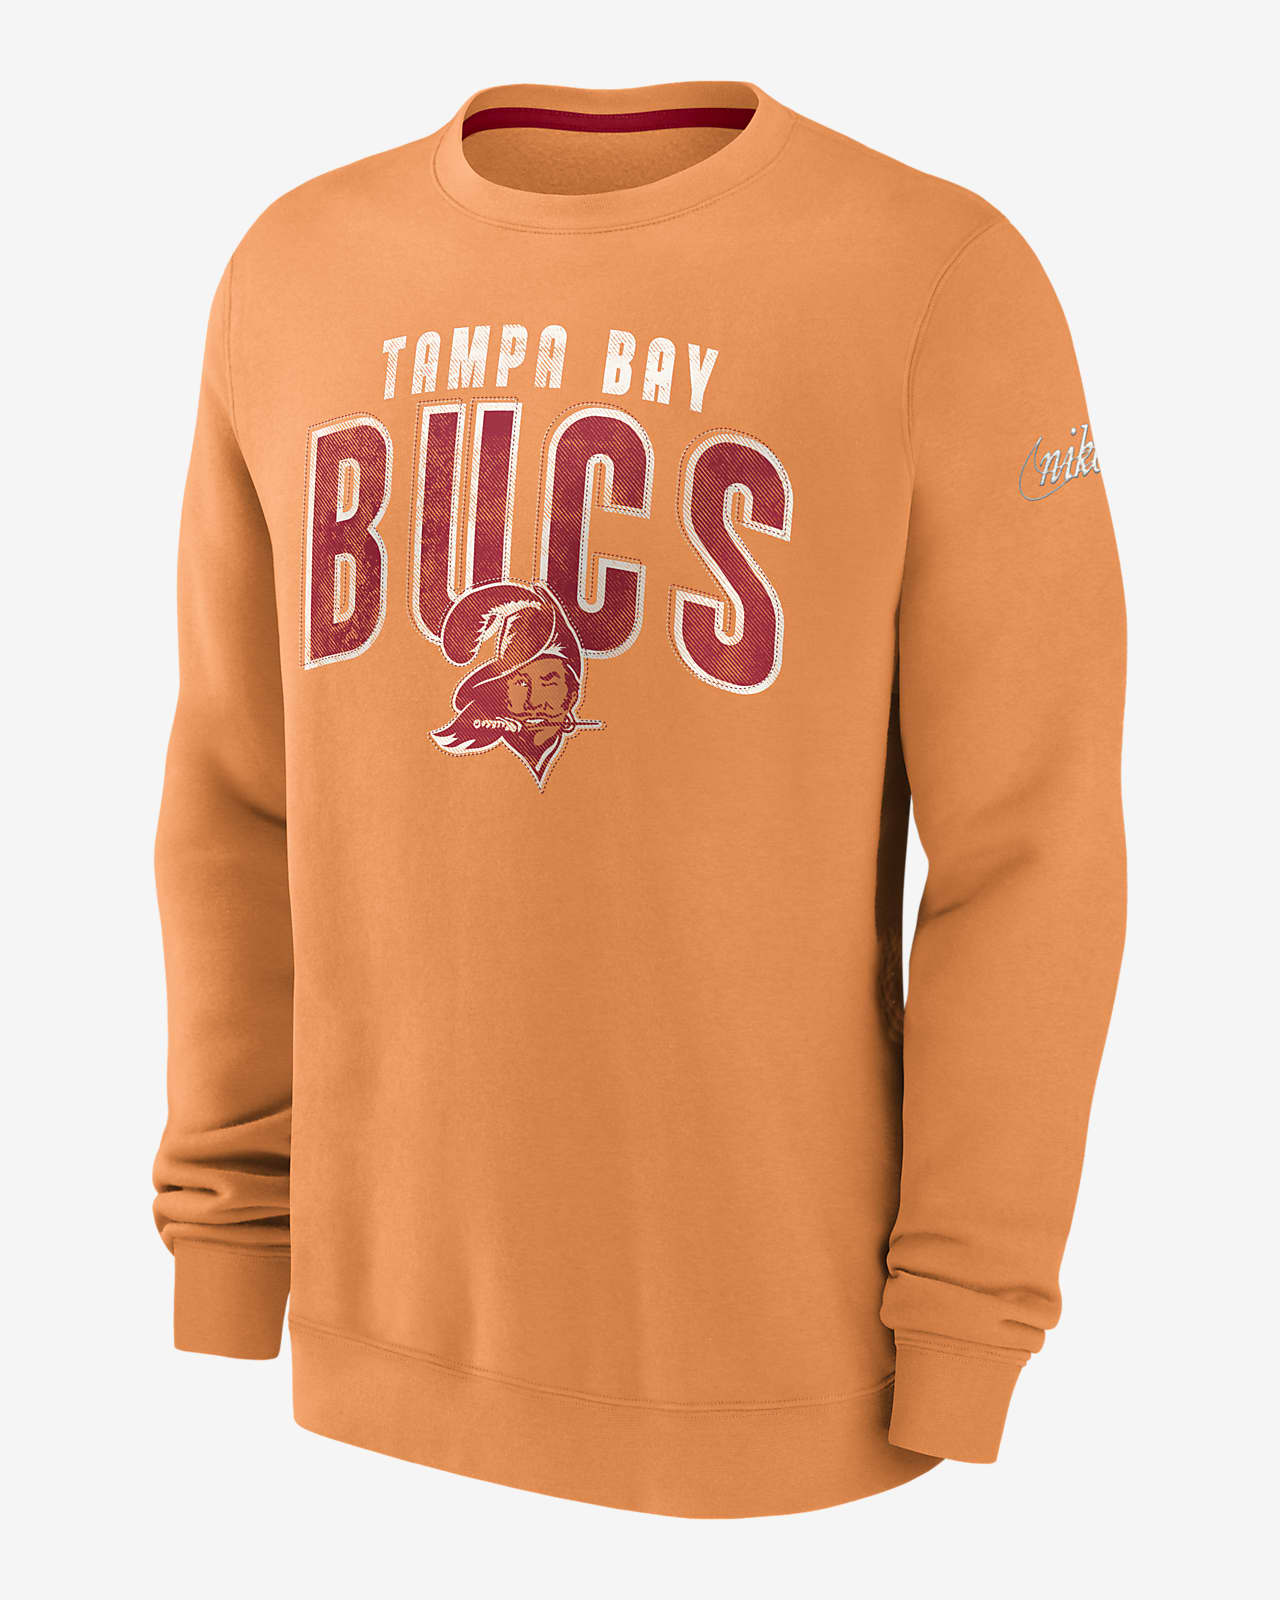 tampa bay buccaneers vintage sweatshirt